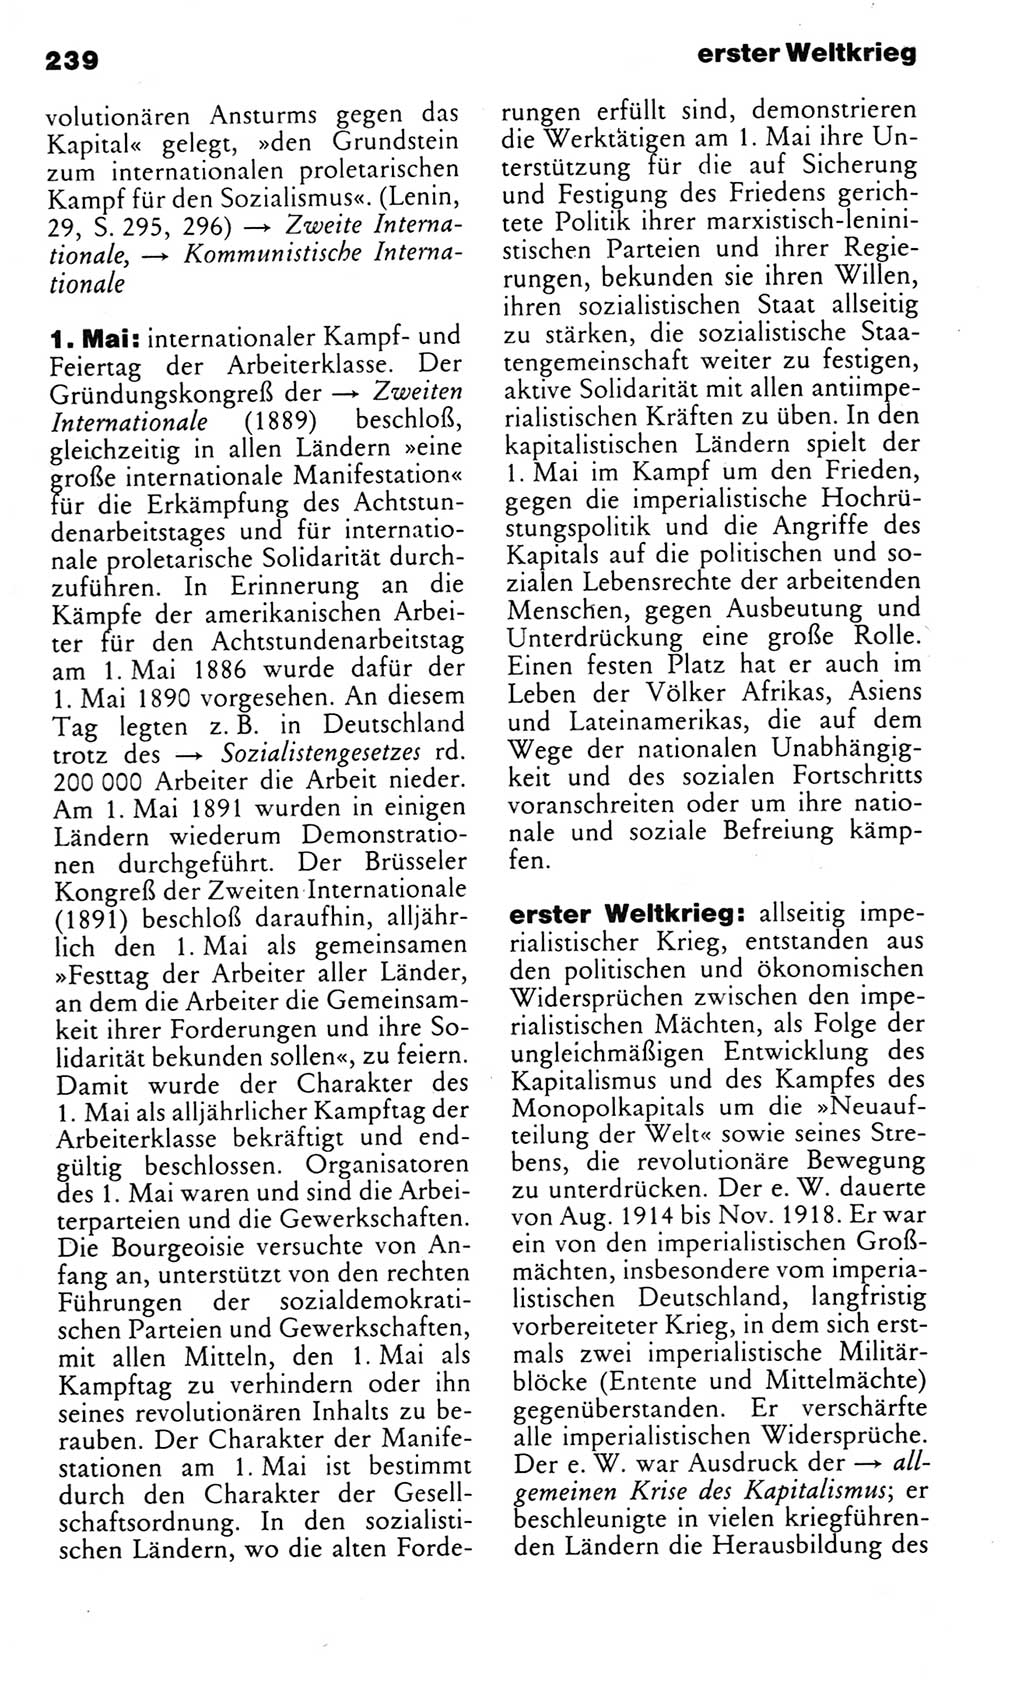 Kleines politisches Wörterbuch [Deutsche Demokratische Republik (DDR)] 1983, Seite 239 (Kl. pol. Wb. DDR 1983, S. 239)